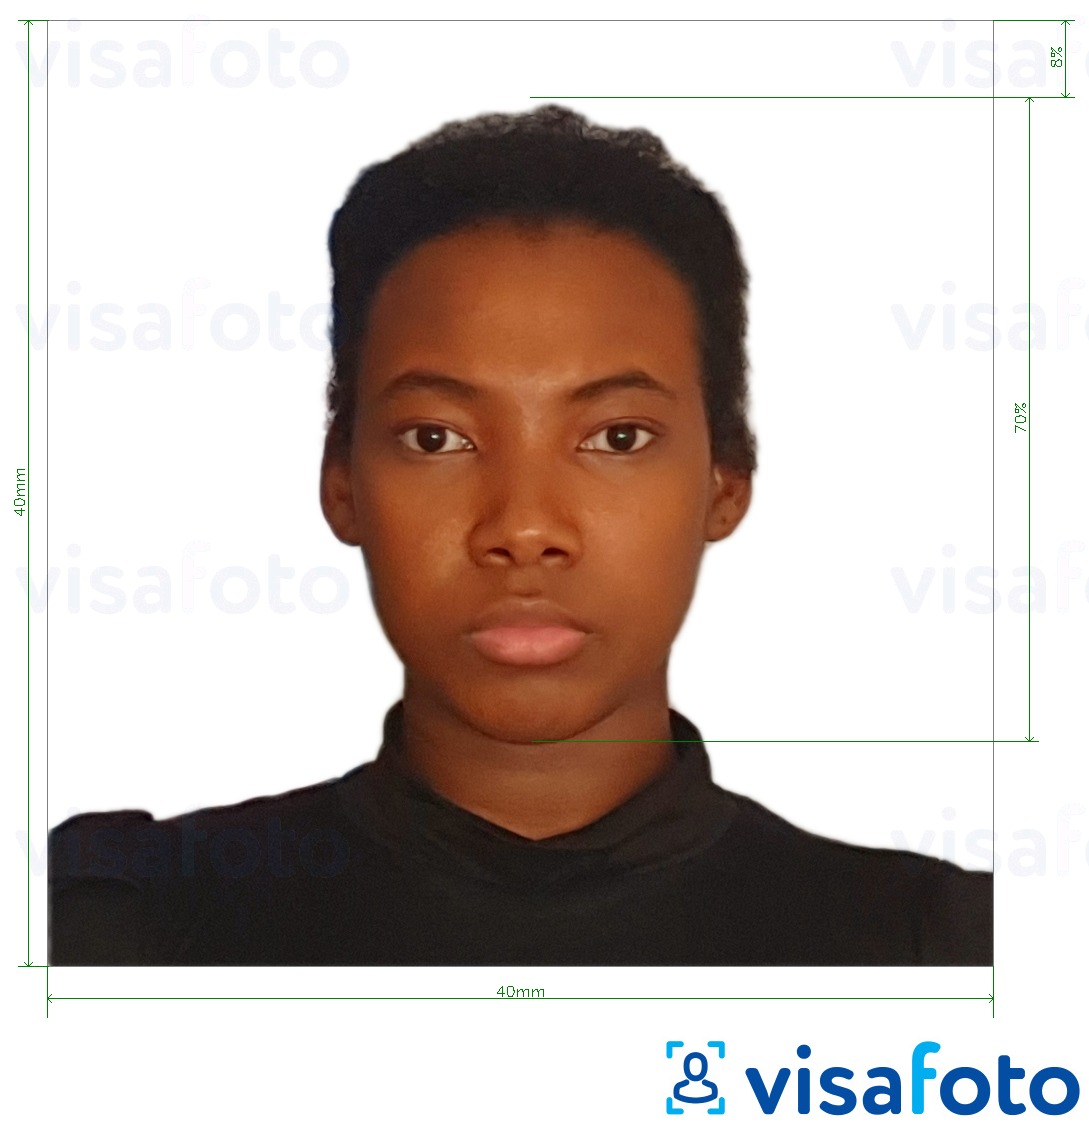 Exemplu de fotografie pentru Carte de identitate Madagascar 40x40 mm cu aceeași dimensiune indicată